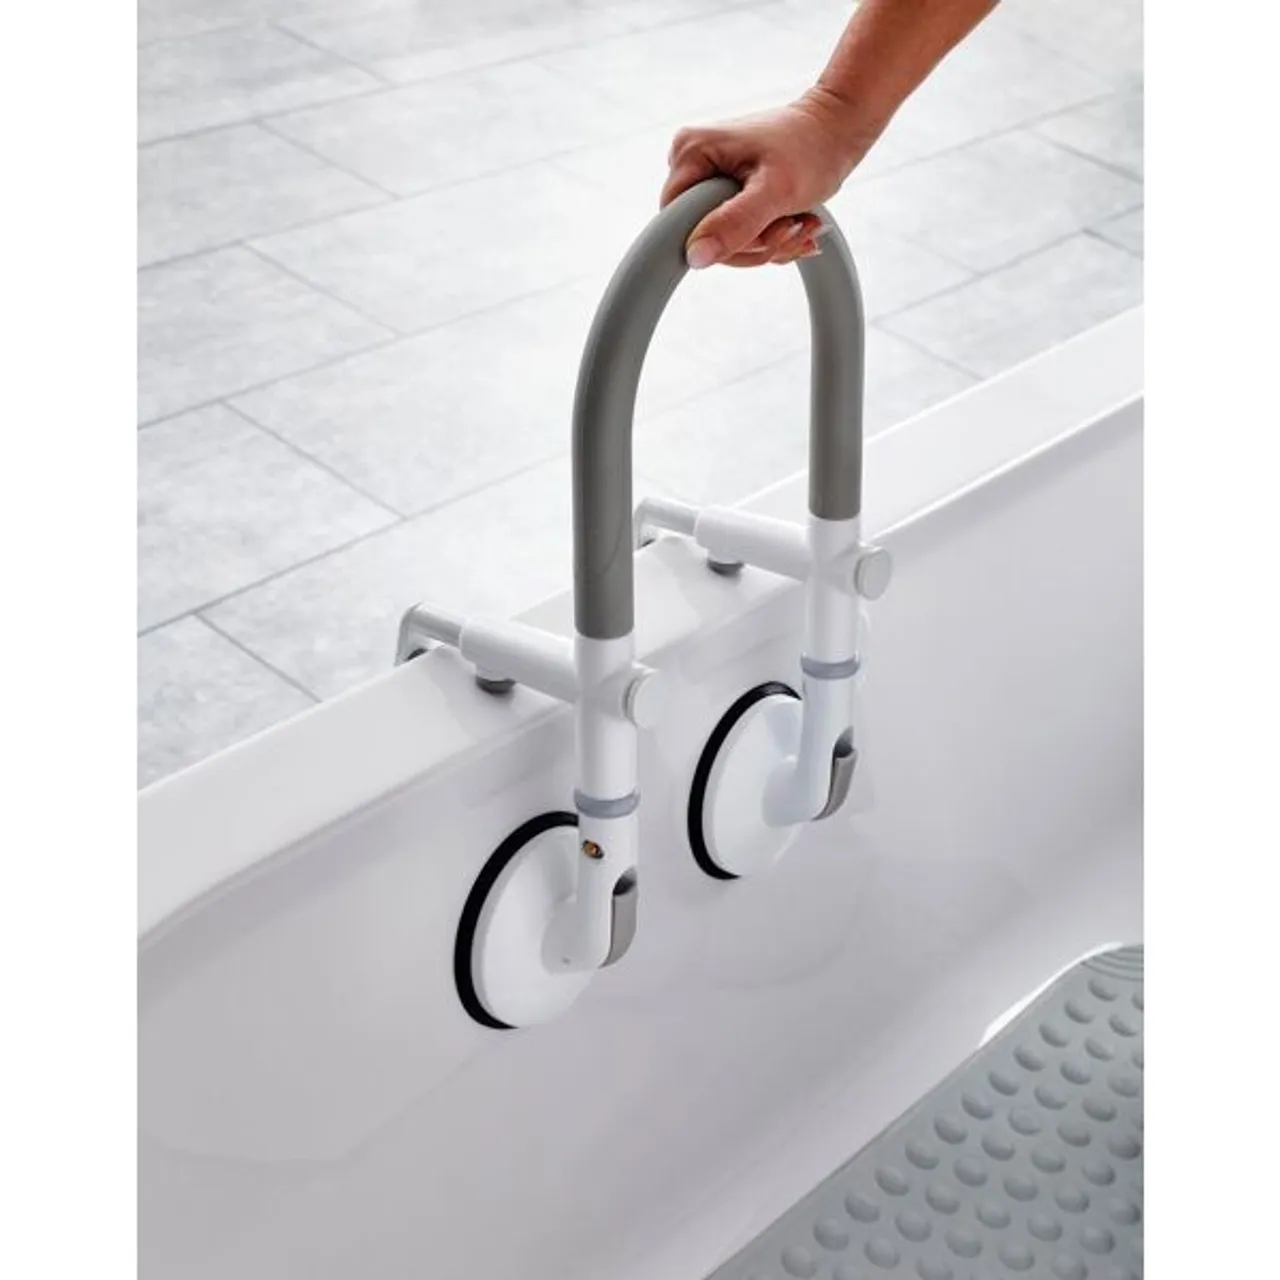 Badewannen-Einstiegshilfe RIDDER "Rob" Haltegriffe grau (weiß, grau) Badhilfen WC-Hilfen